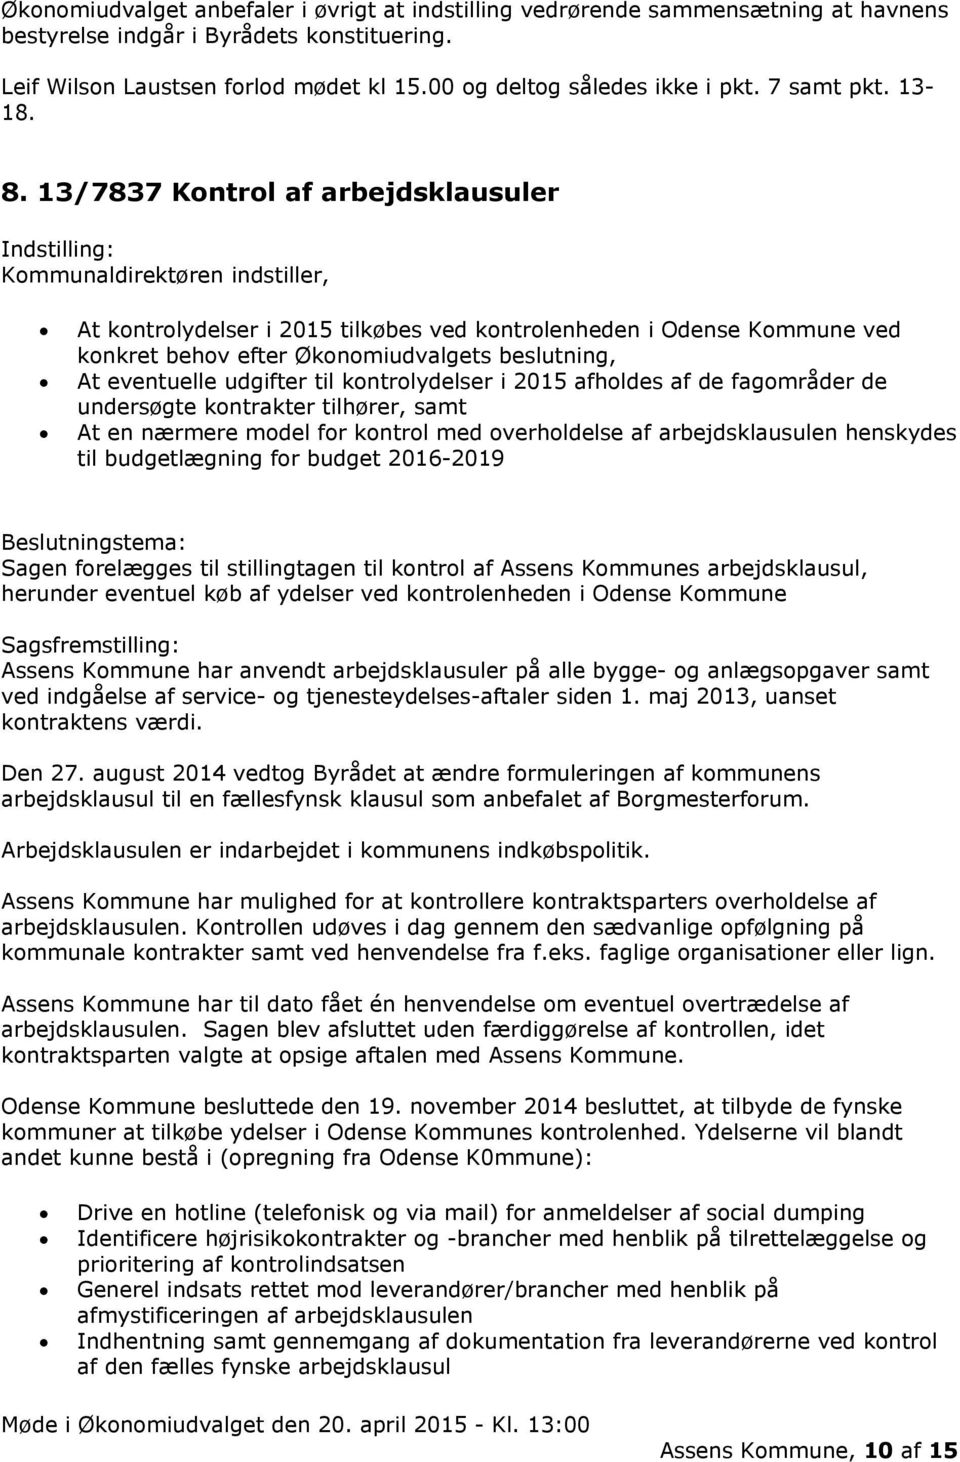 13/7837 Kontrol af arbejdsklausuler Kommunaldirektøren indstiller, At kontrolydelser i 2015 tilkøbes ved kontrolenheden i Odense Kommune ved konkret behov efter Økonomiudvalgets beslutning, At